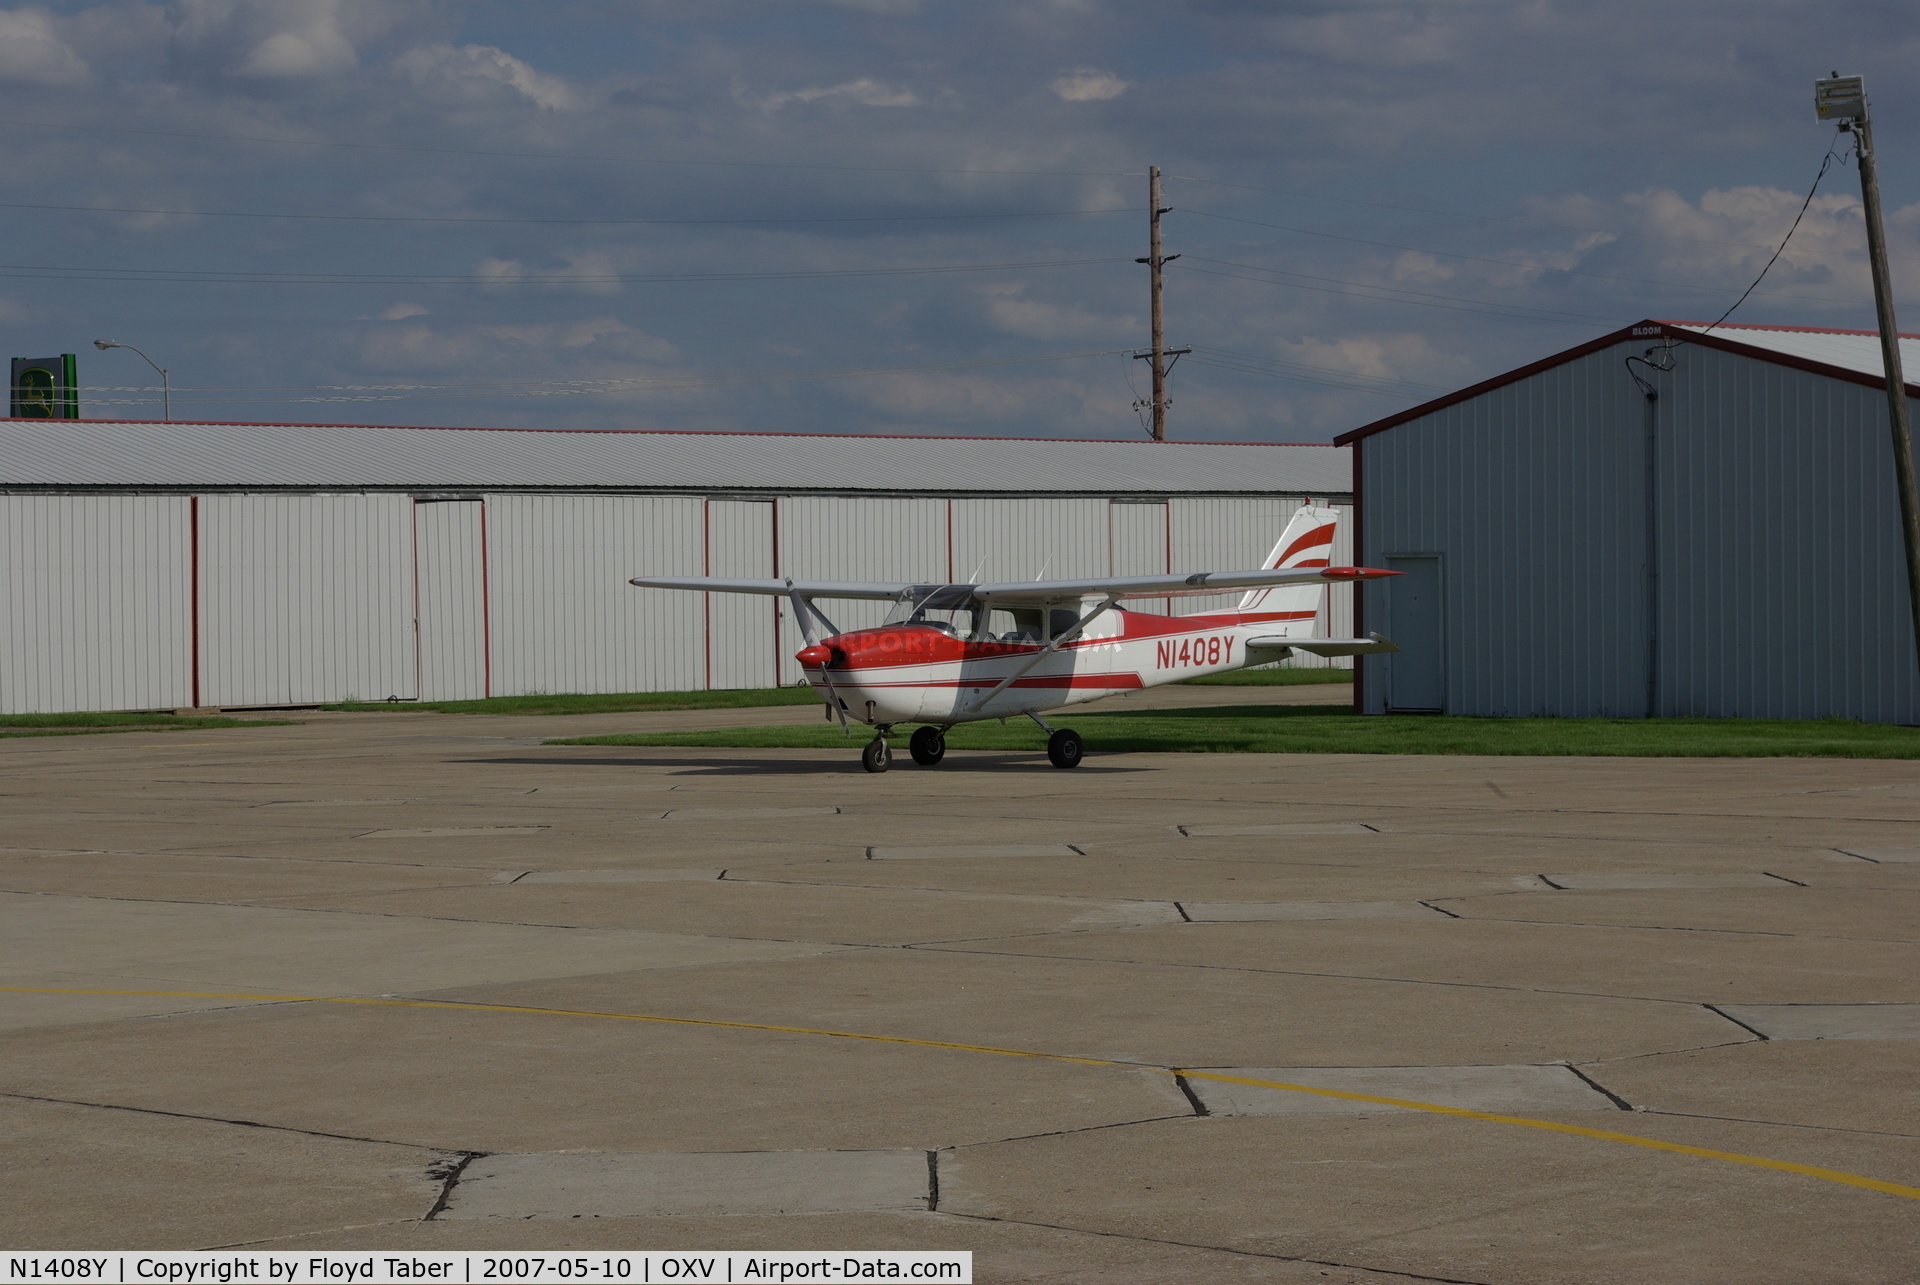 N1408Y, 1961 Cessna 172C C/N 17249108, Parked